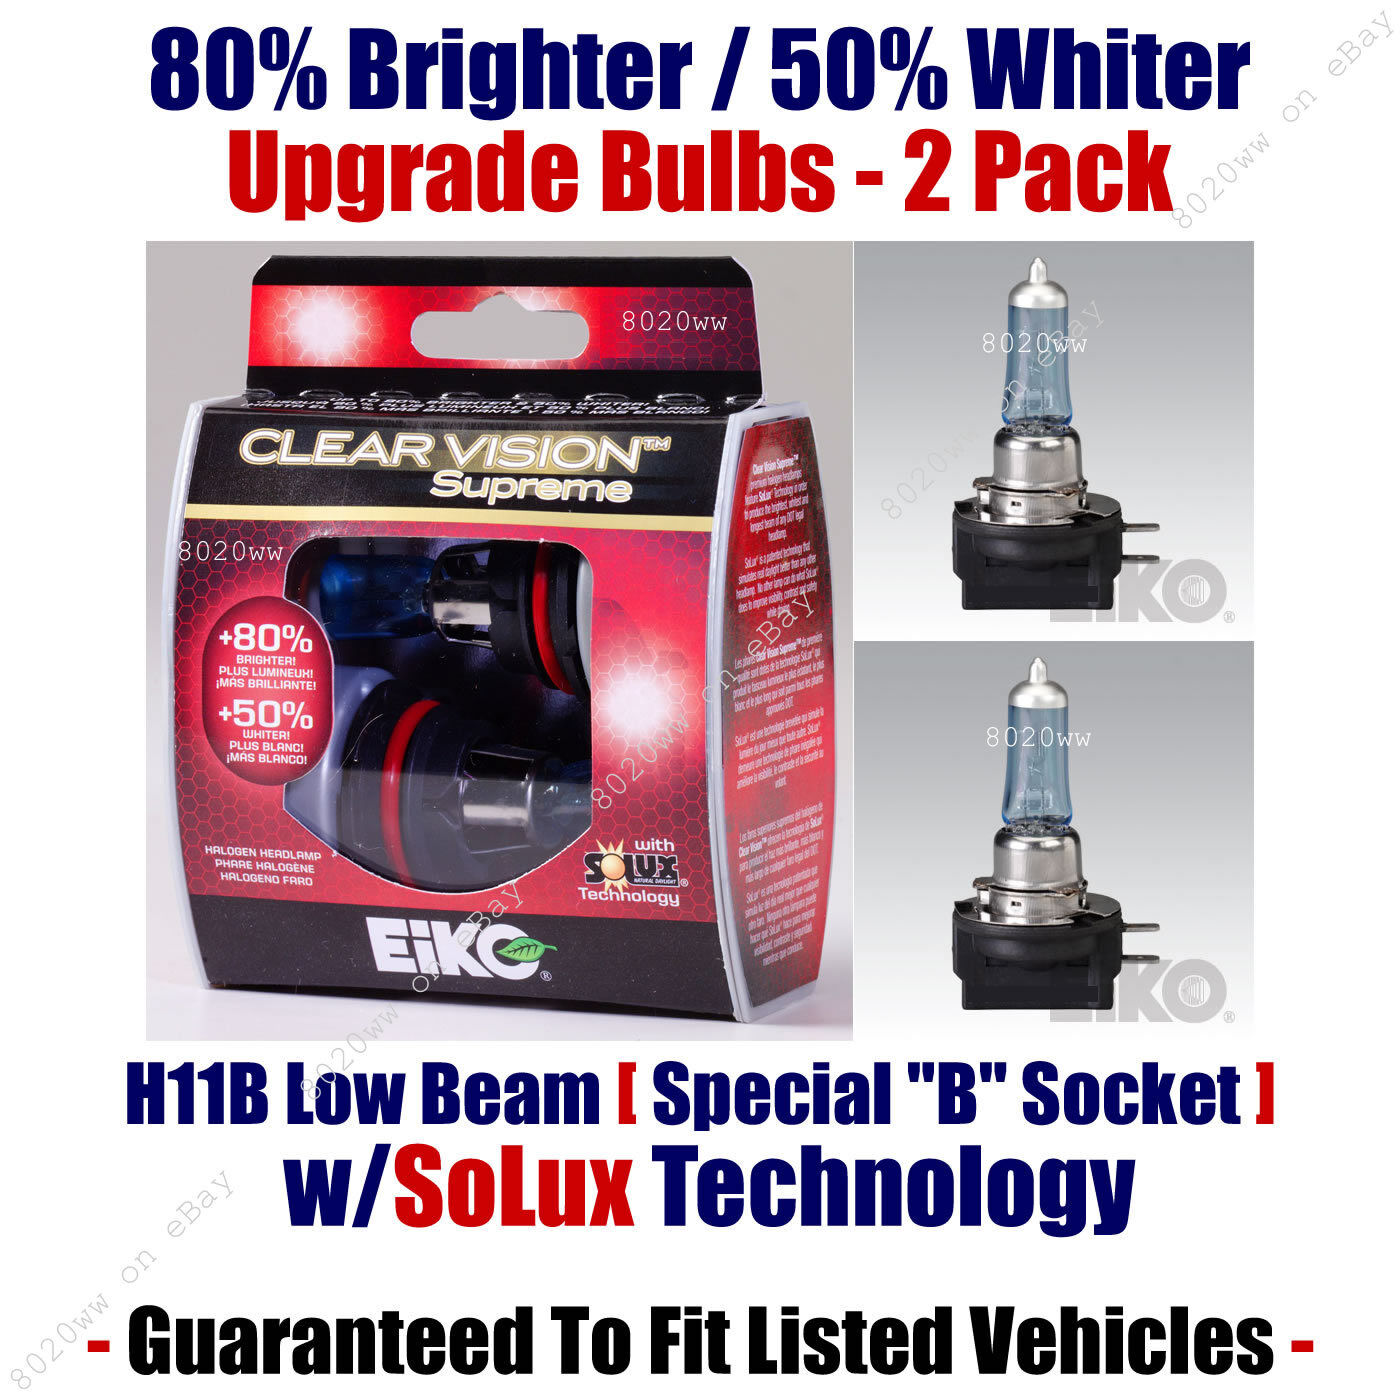 2-Pack Upgrade Headlight Bulbs Low Beam 80% Brighter 50% Whiter EiKo H11B CVSU2